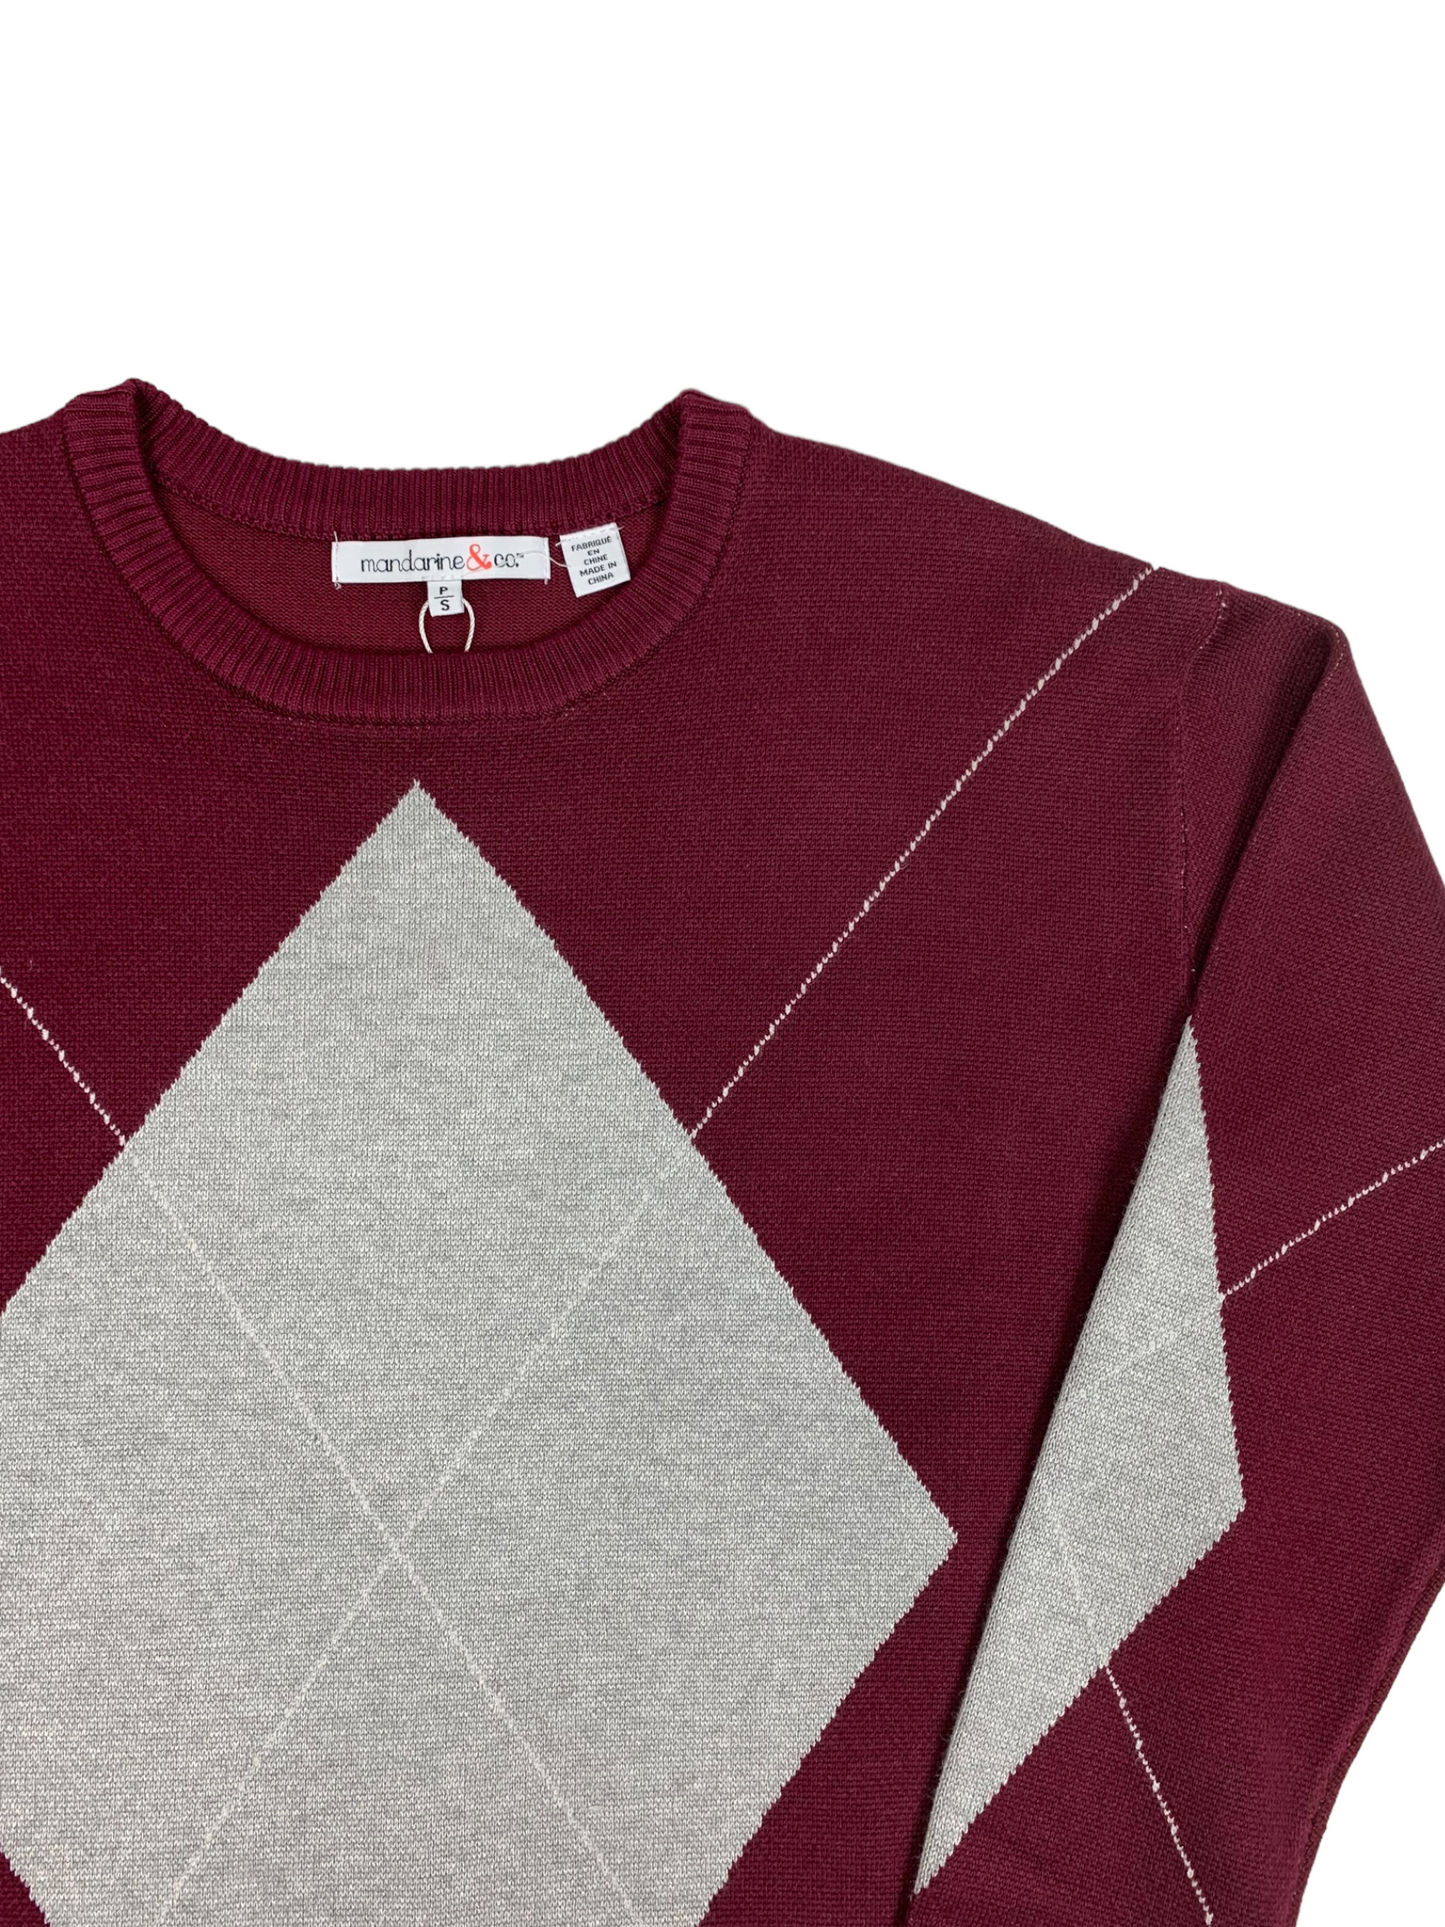 Women's Mandarine&Co red sweater